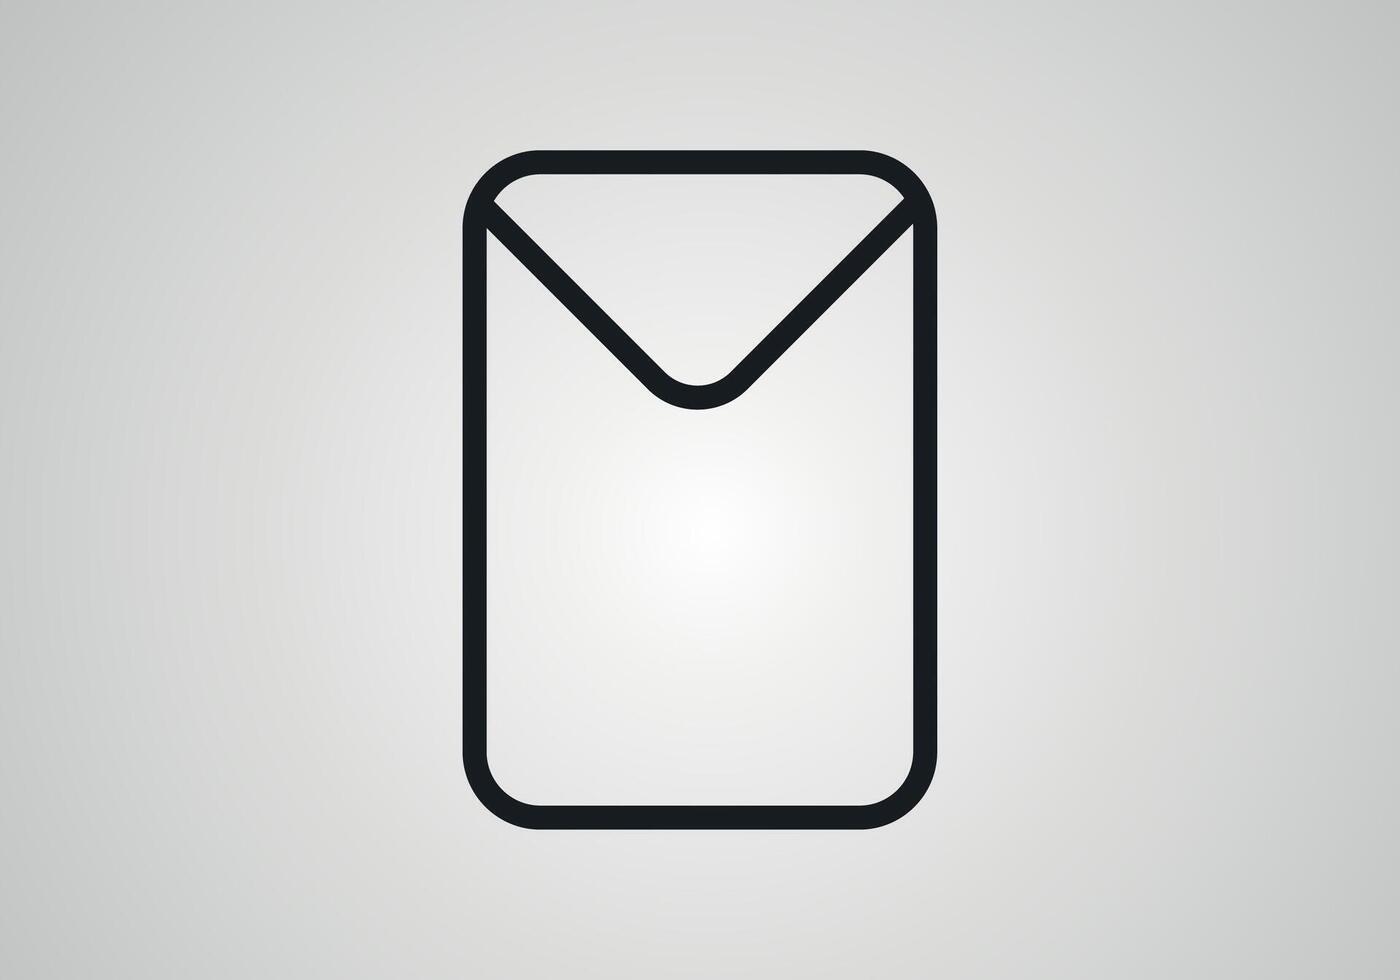 courrier enveloppe icône dans plat style. recevoir email lettre Spam vecteur illustration sur blanc Contexte. courrier la communication affaires concept.